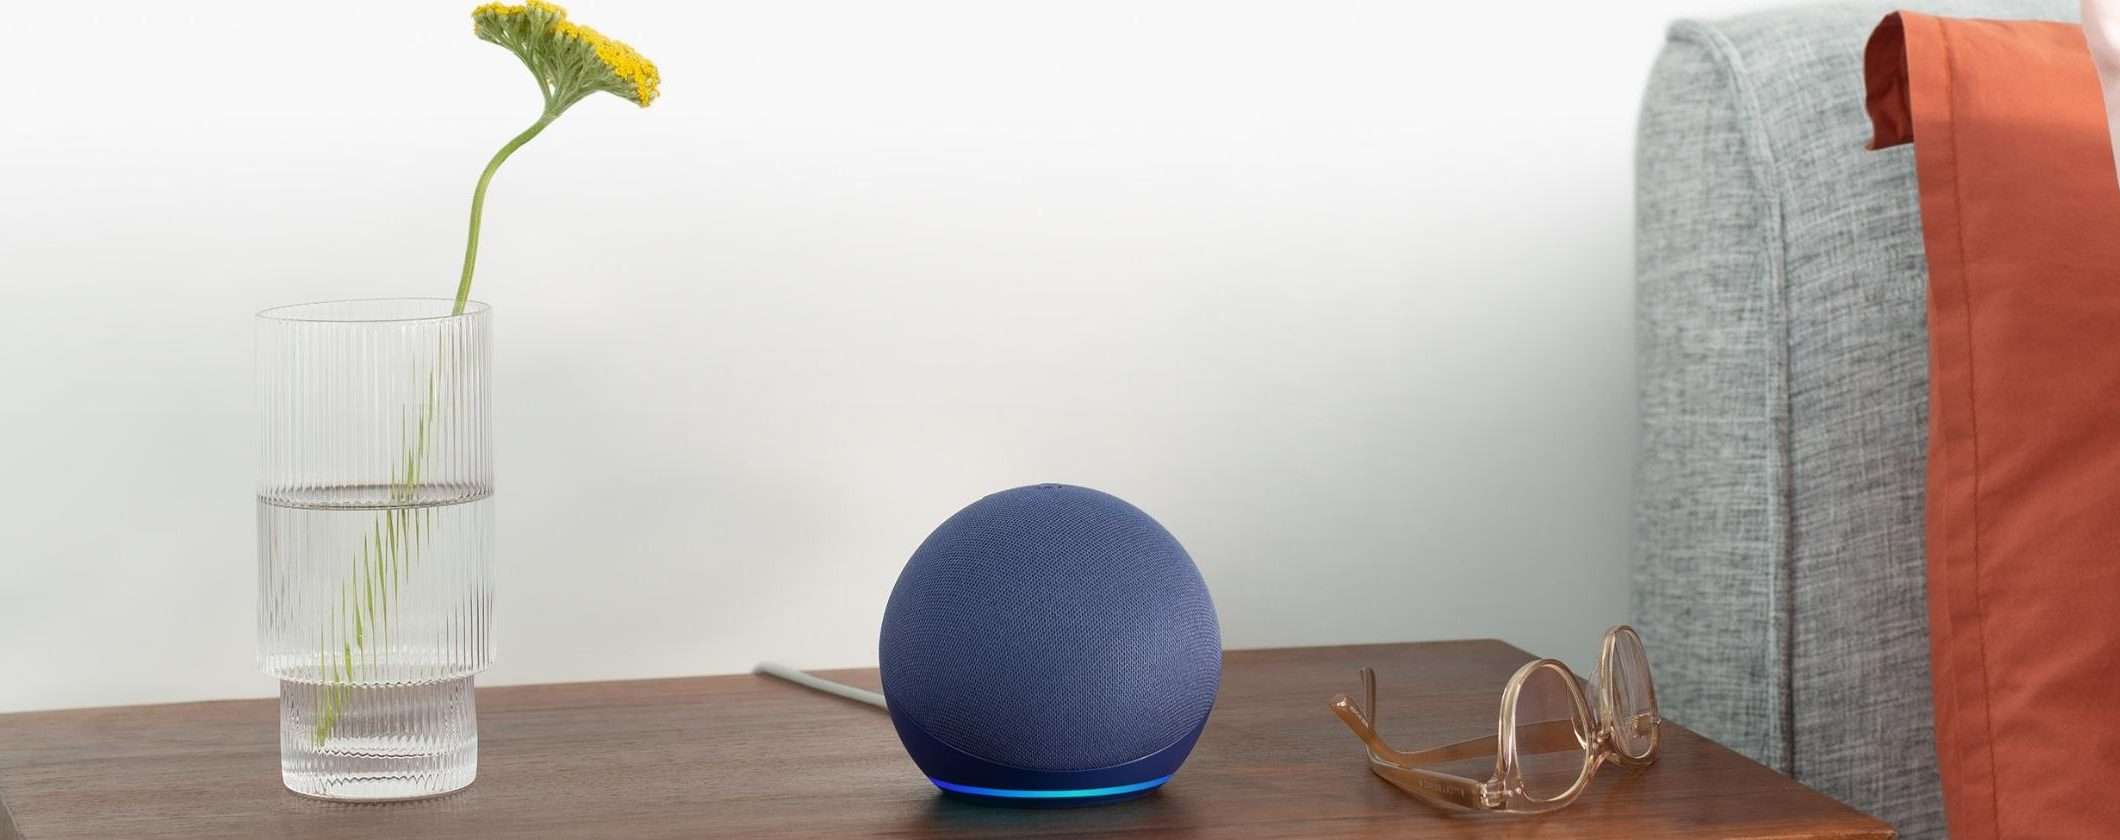 Nuovo Echo Dot 5: da OGGI disponibile su Amazon con spedizione veloce